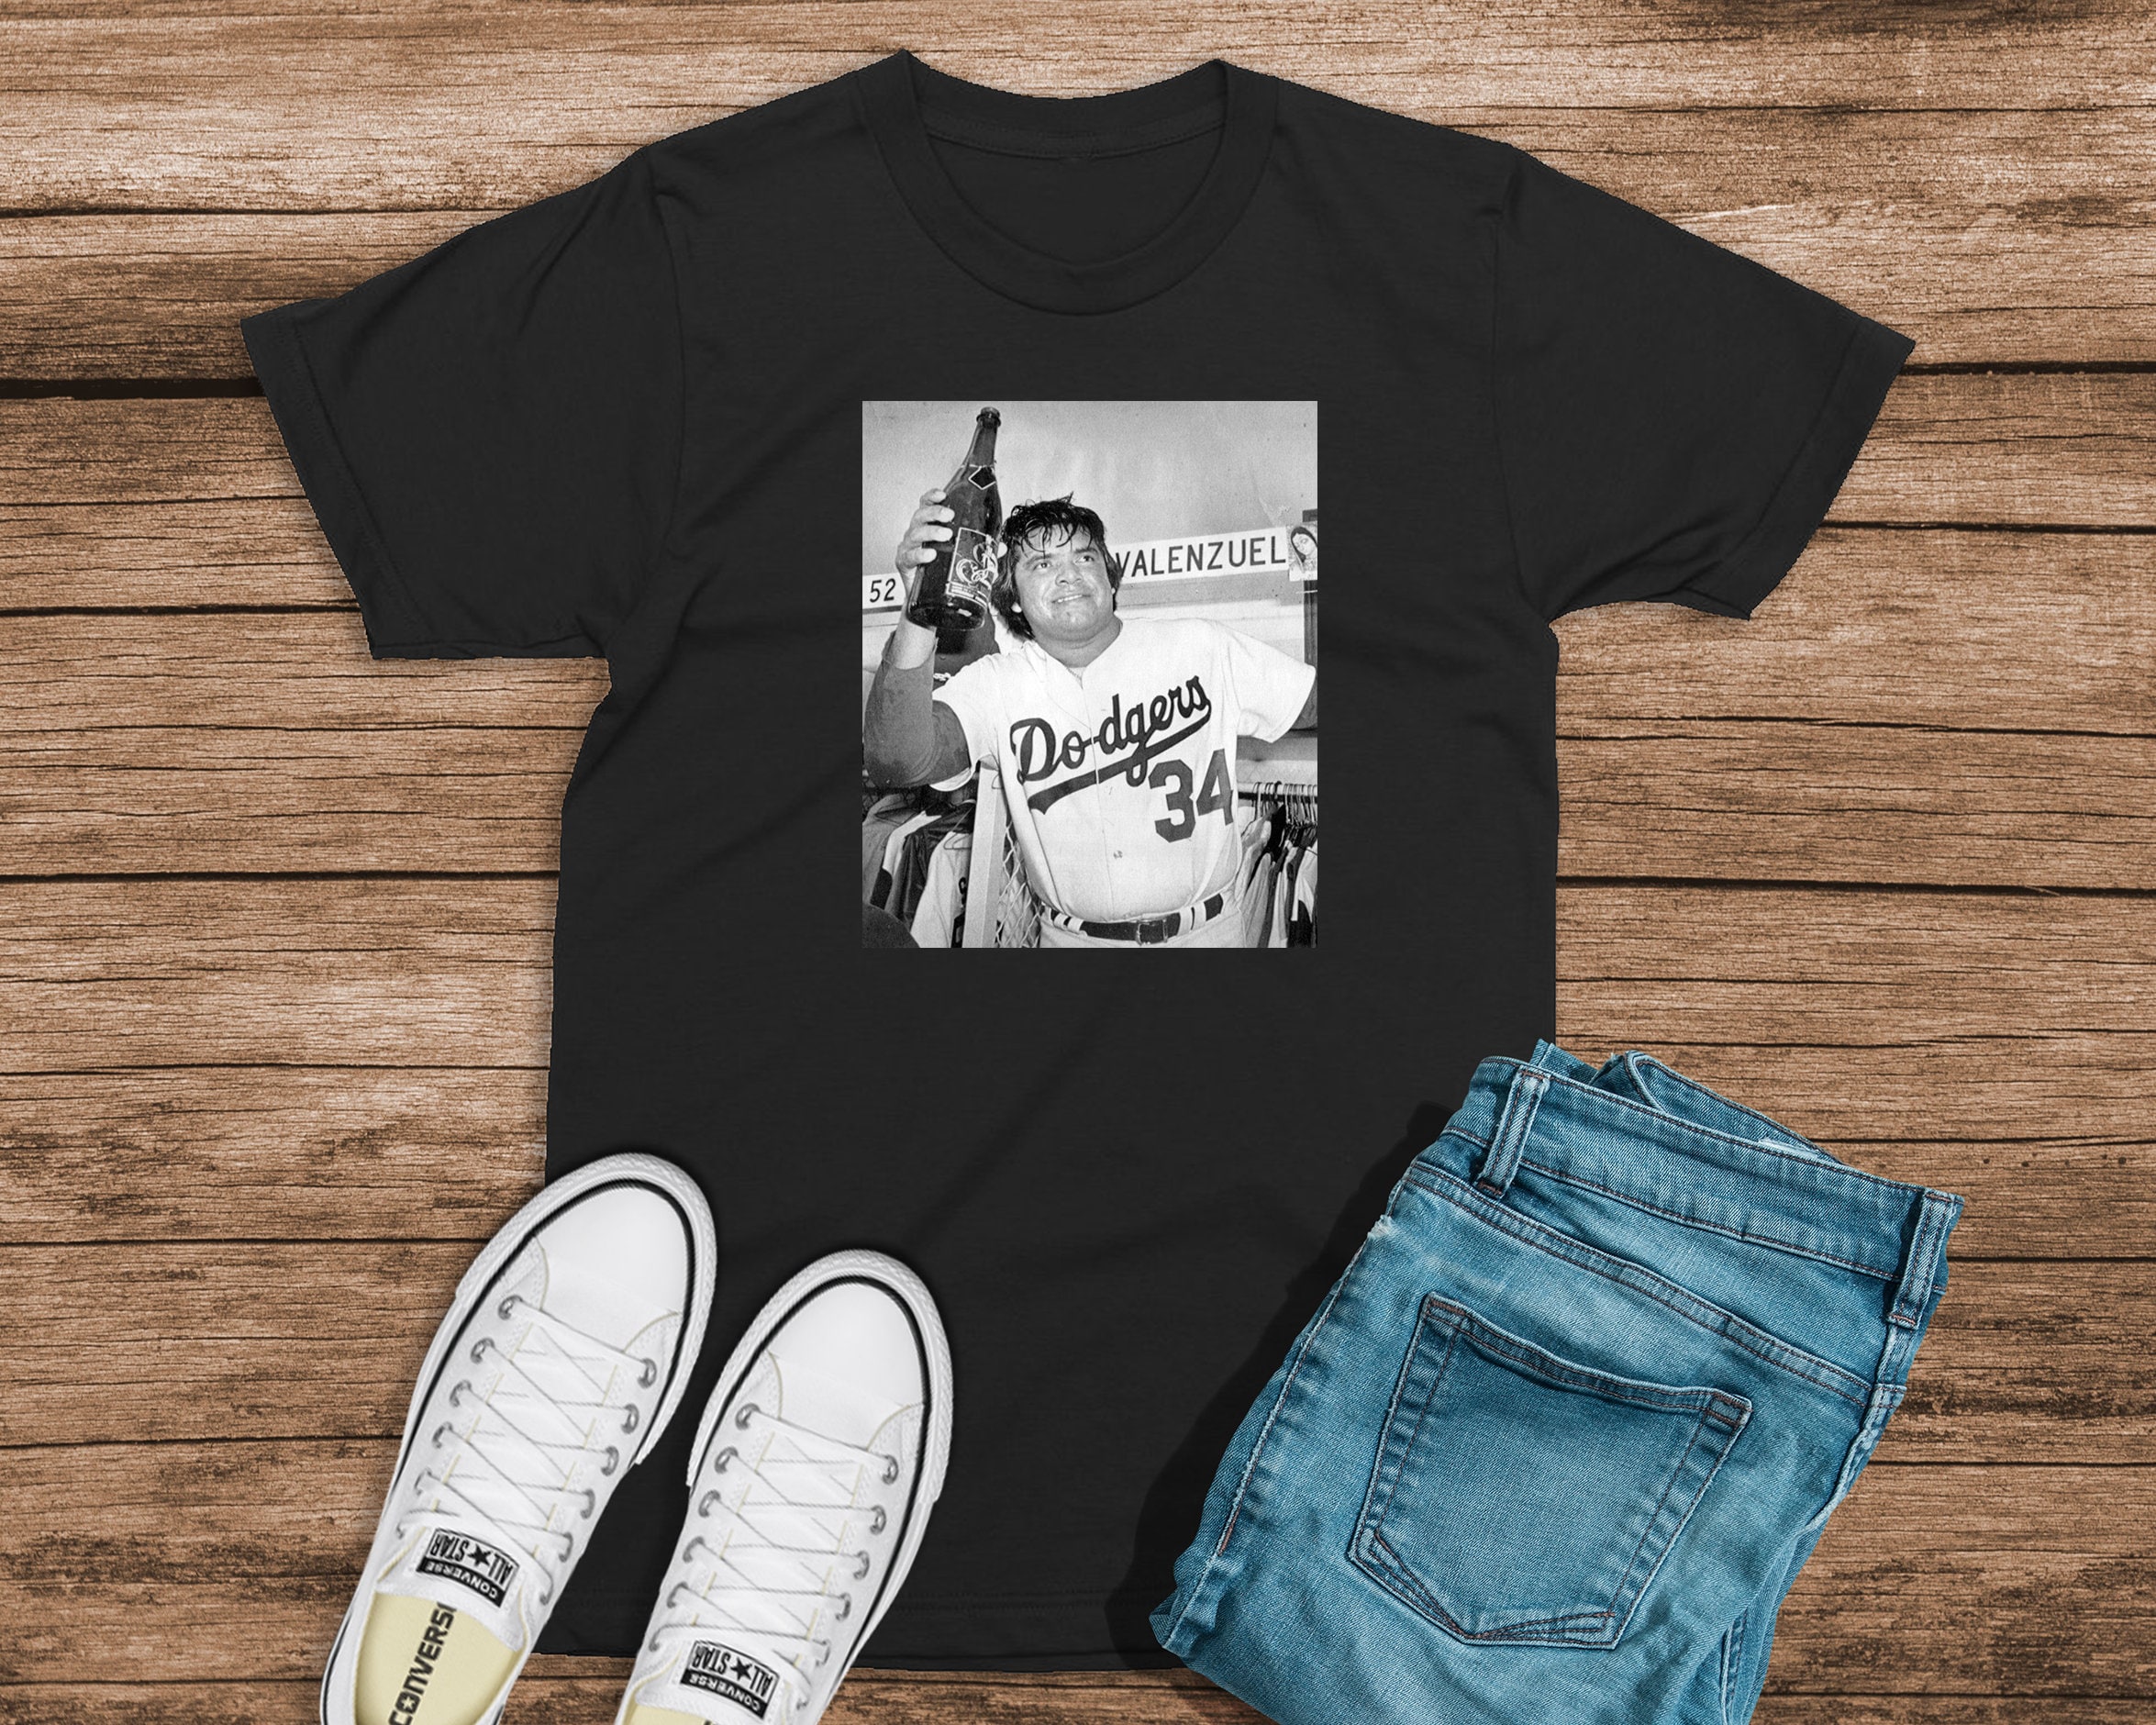 Vintage Dodgers T-Shirt – Des Santos